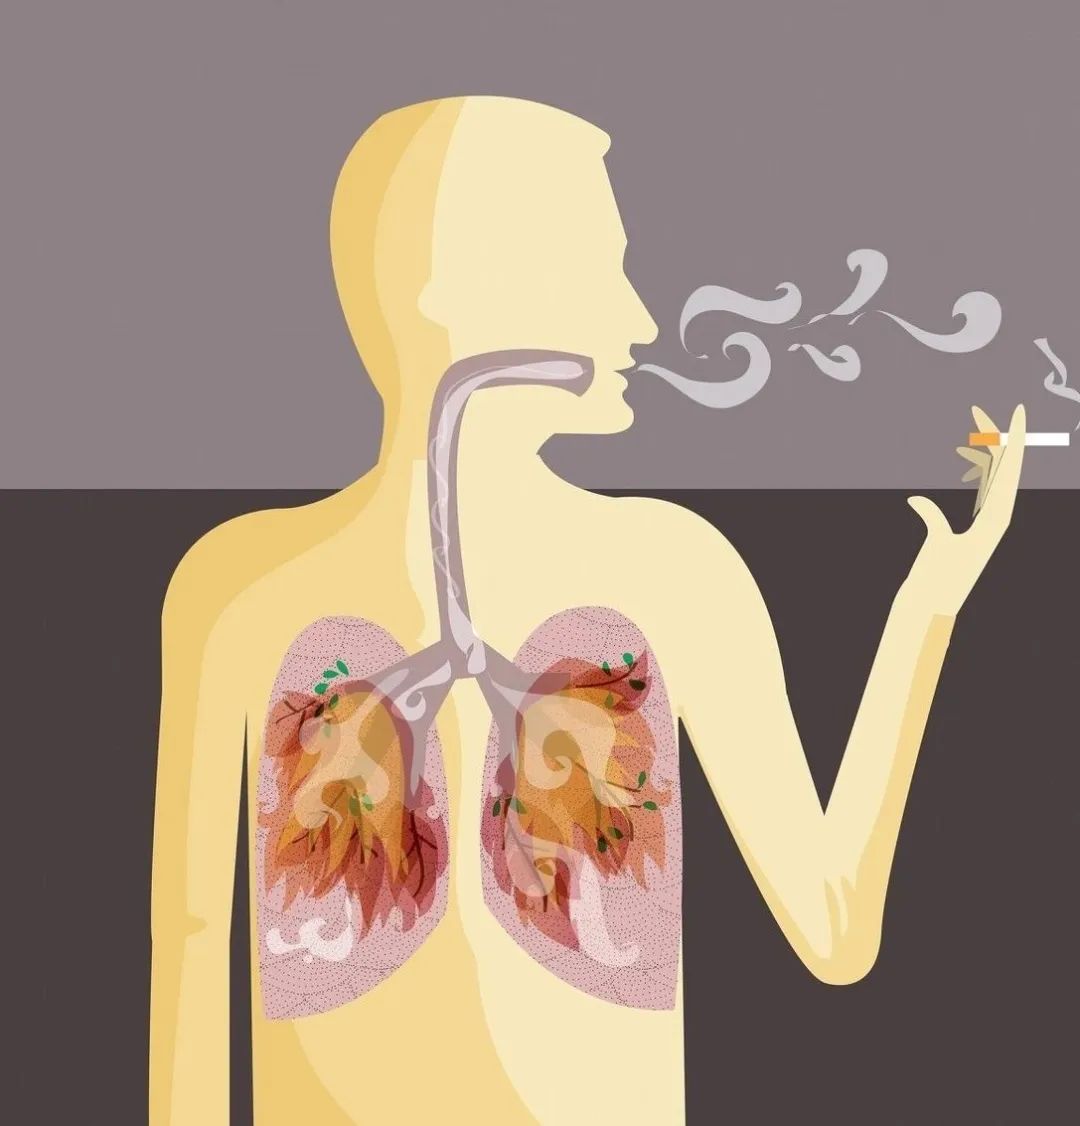 长期吸烟的人,若身体没有4种表现,恭喜你,说明肺部还算健康